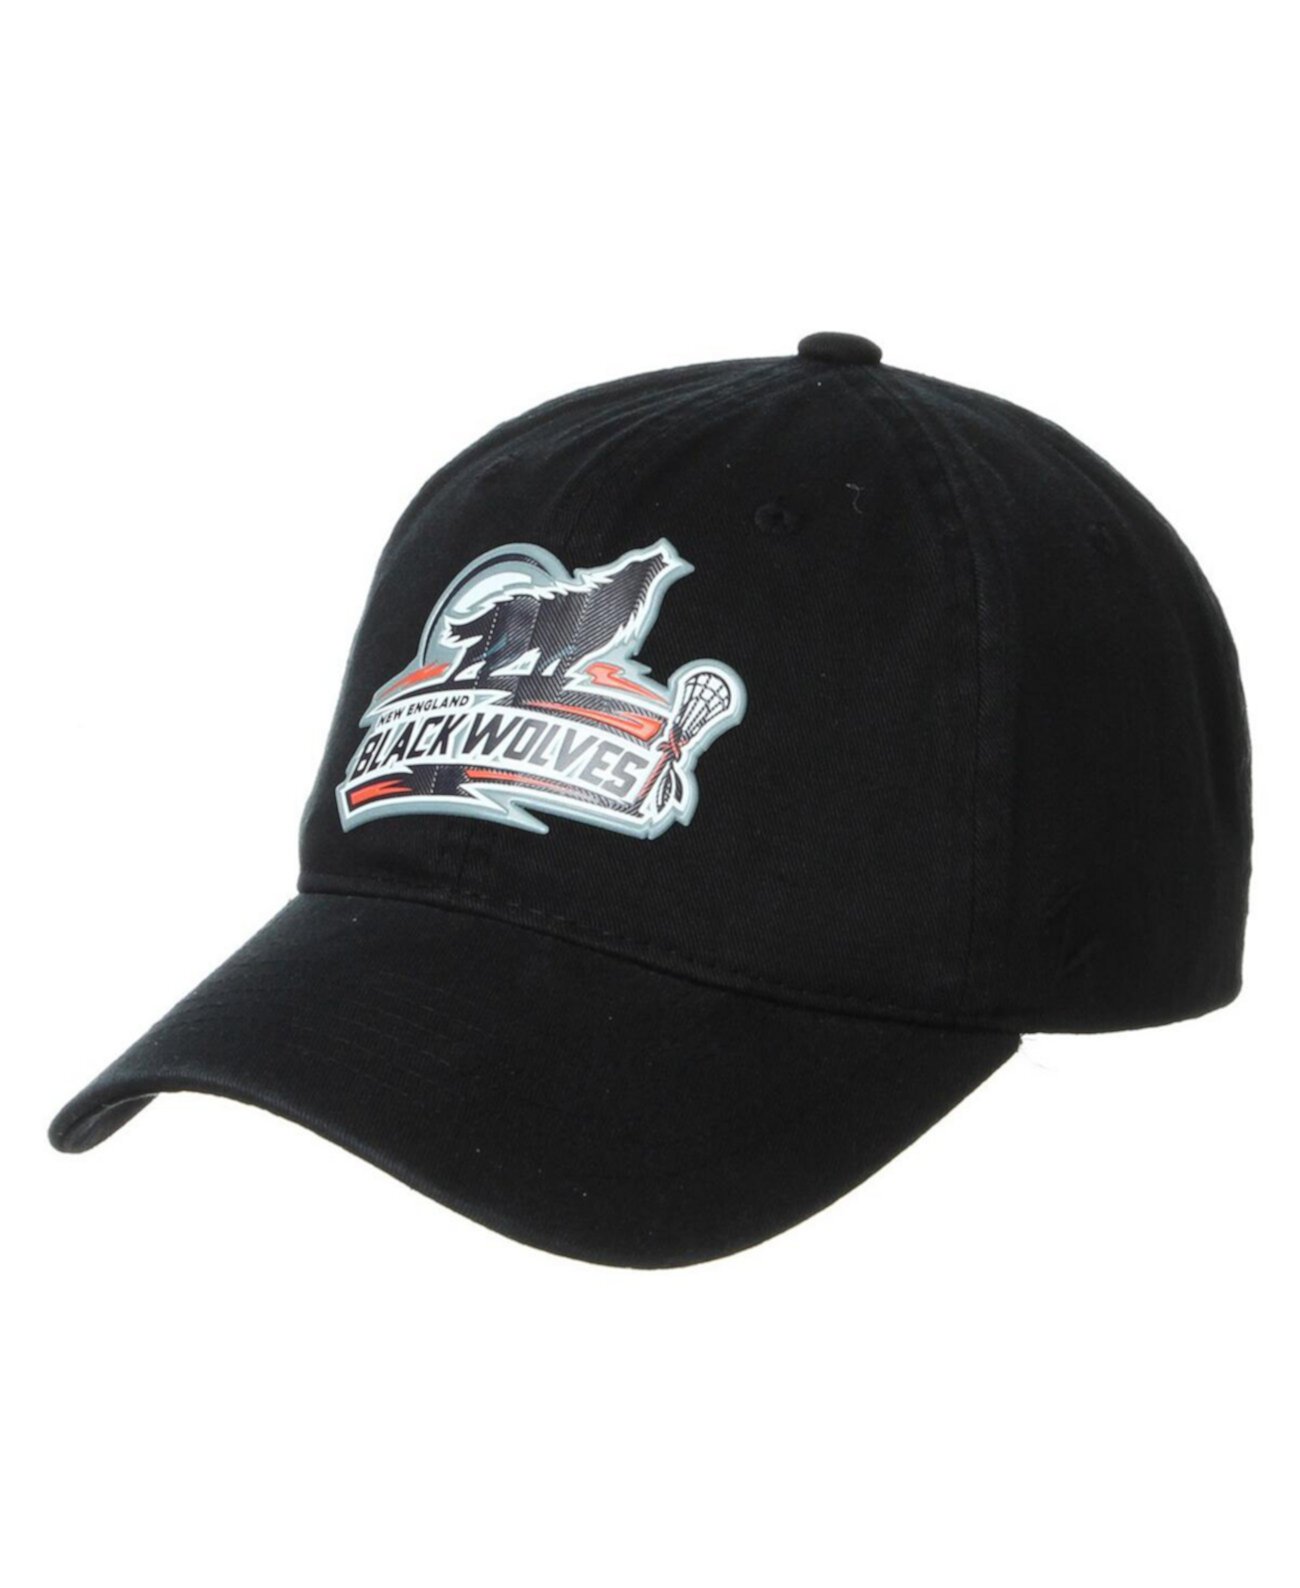 Мужская черная регулируемая шапка с логотипом New England Black Wolves Primary Logo Zephyr